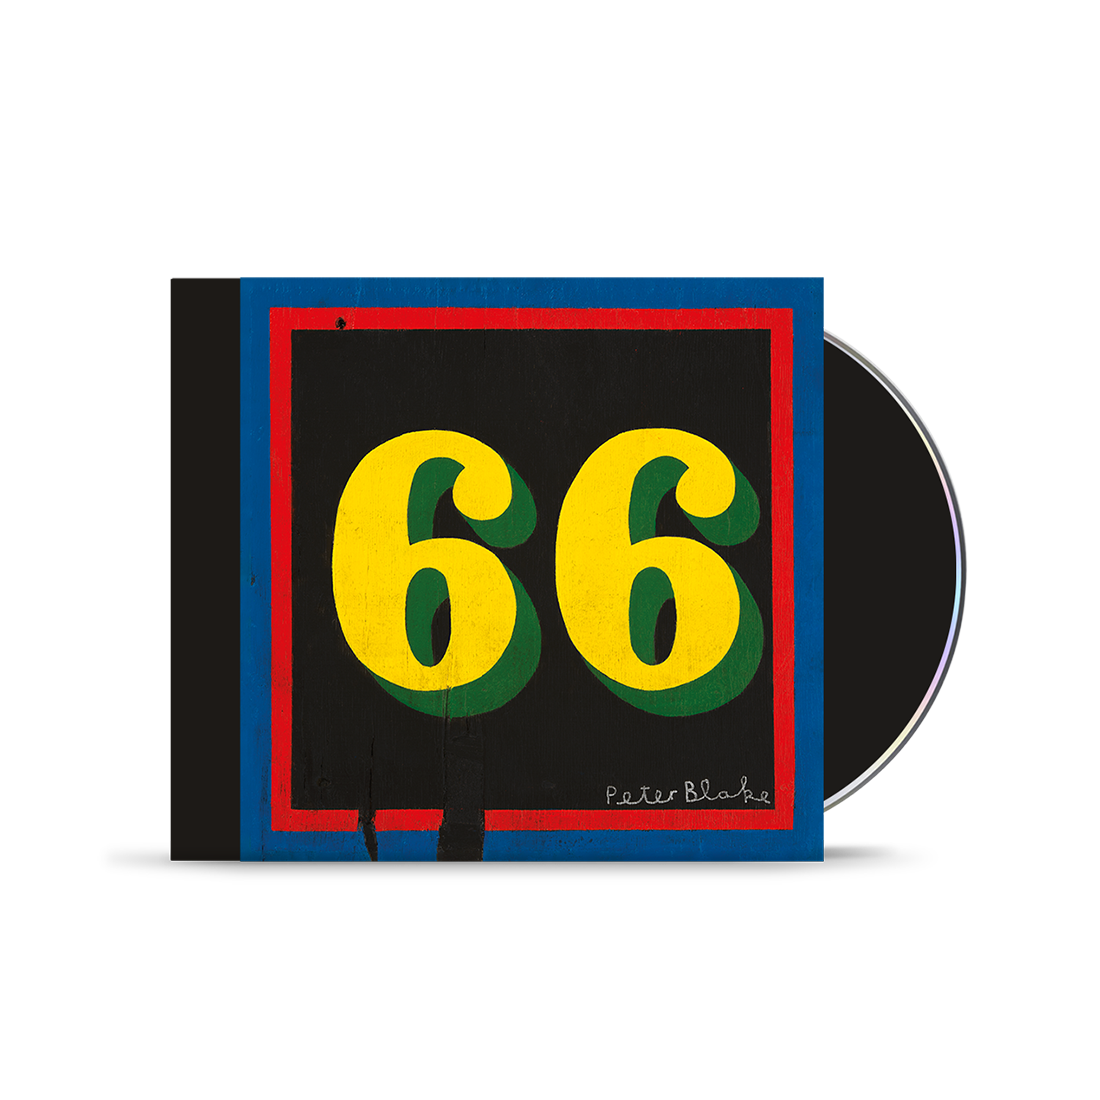 Paul Weller - 66 CD